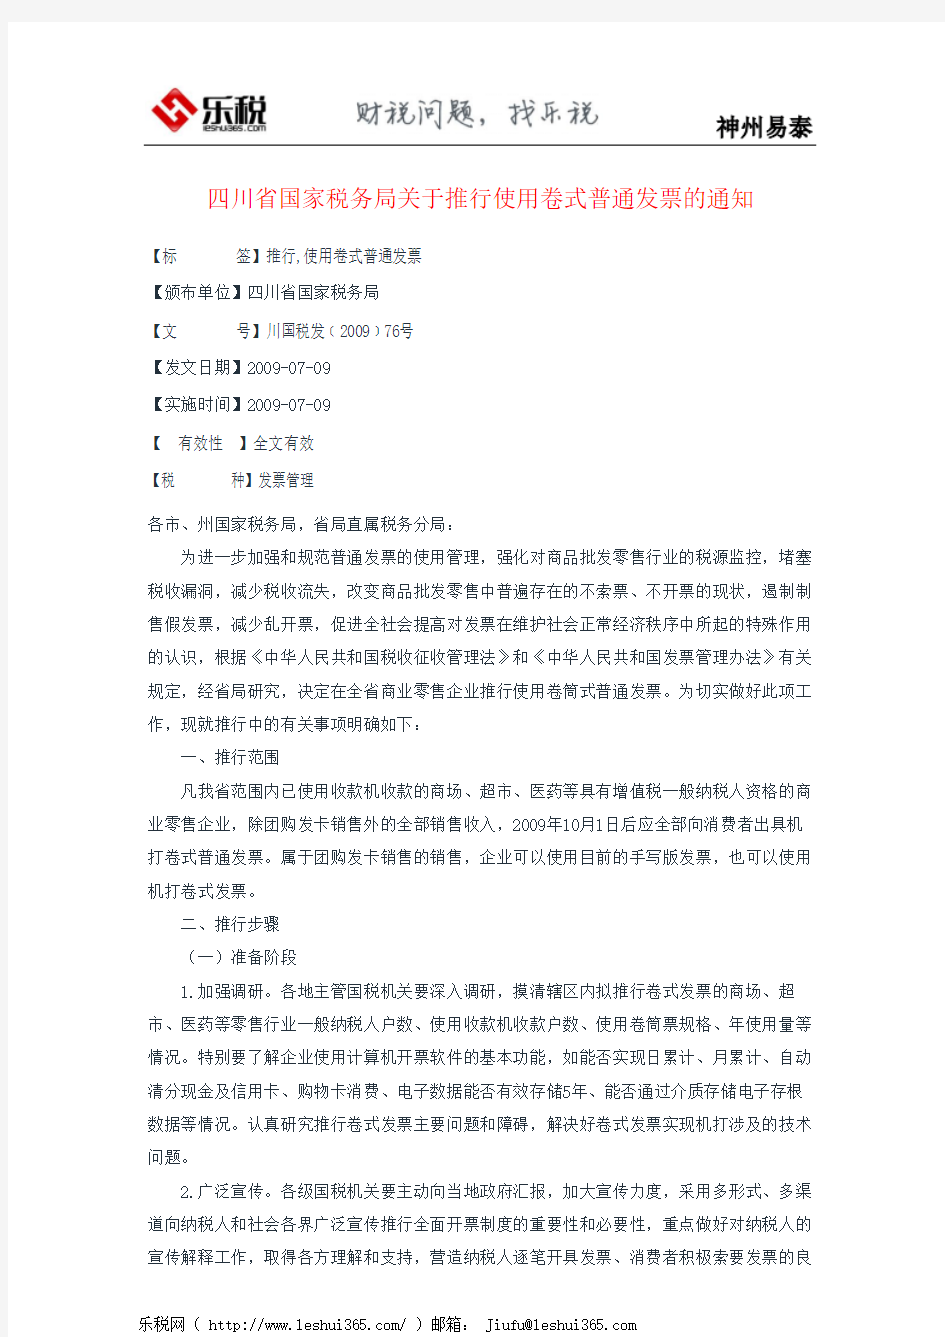 四川省国家税务局关于推行使用卷式普通发票的通知